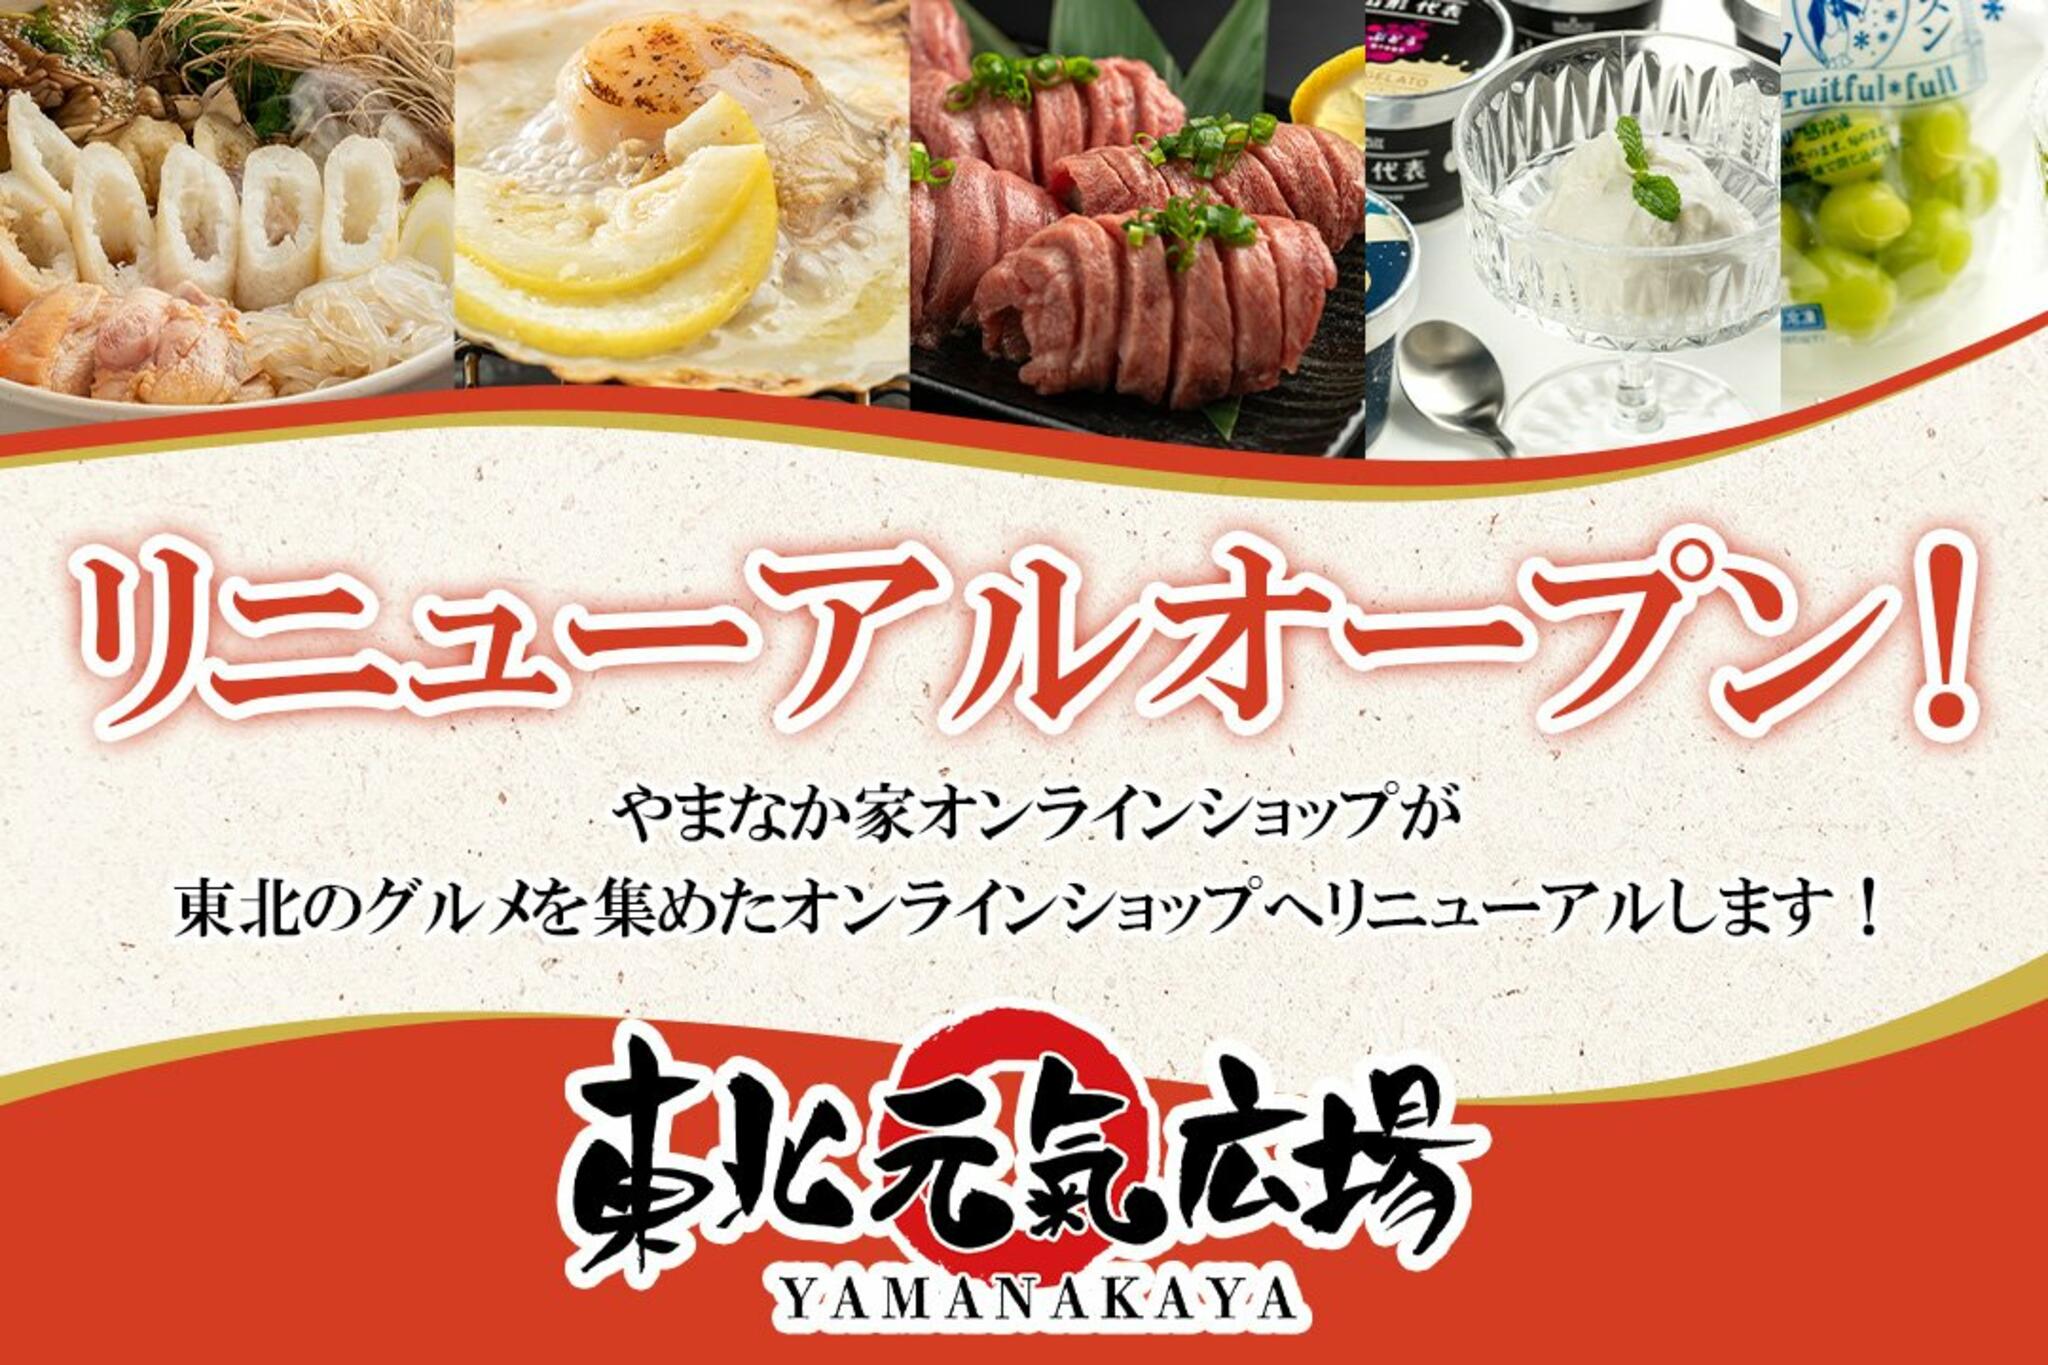 焼肉冷麺やまなか家 上田バイパス店からのお知らせ(オンラインショップリニューアルキャンペーンのお知らせ)に関する写真